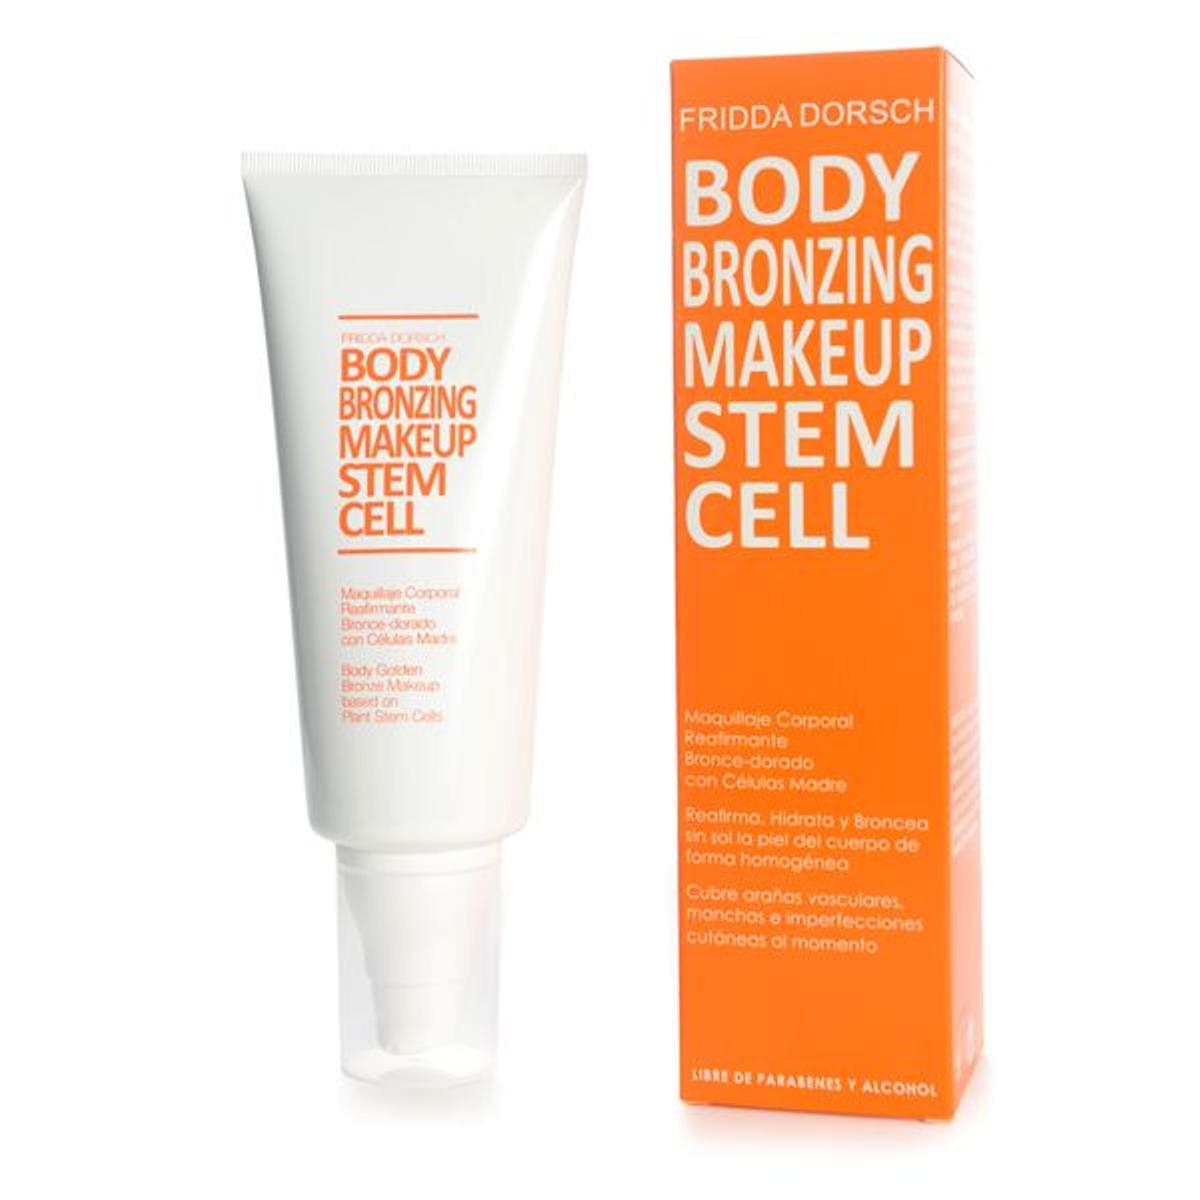 Body Bronzing Makeup Stem Cell, Fridda Dorsch